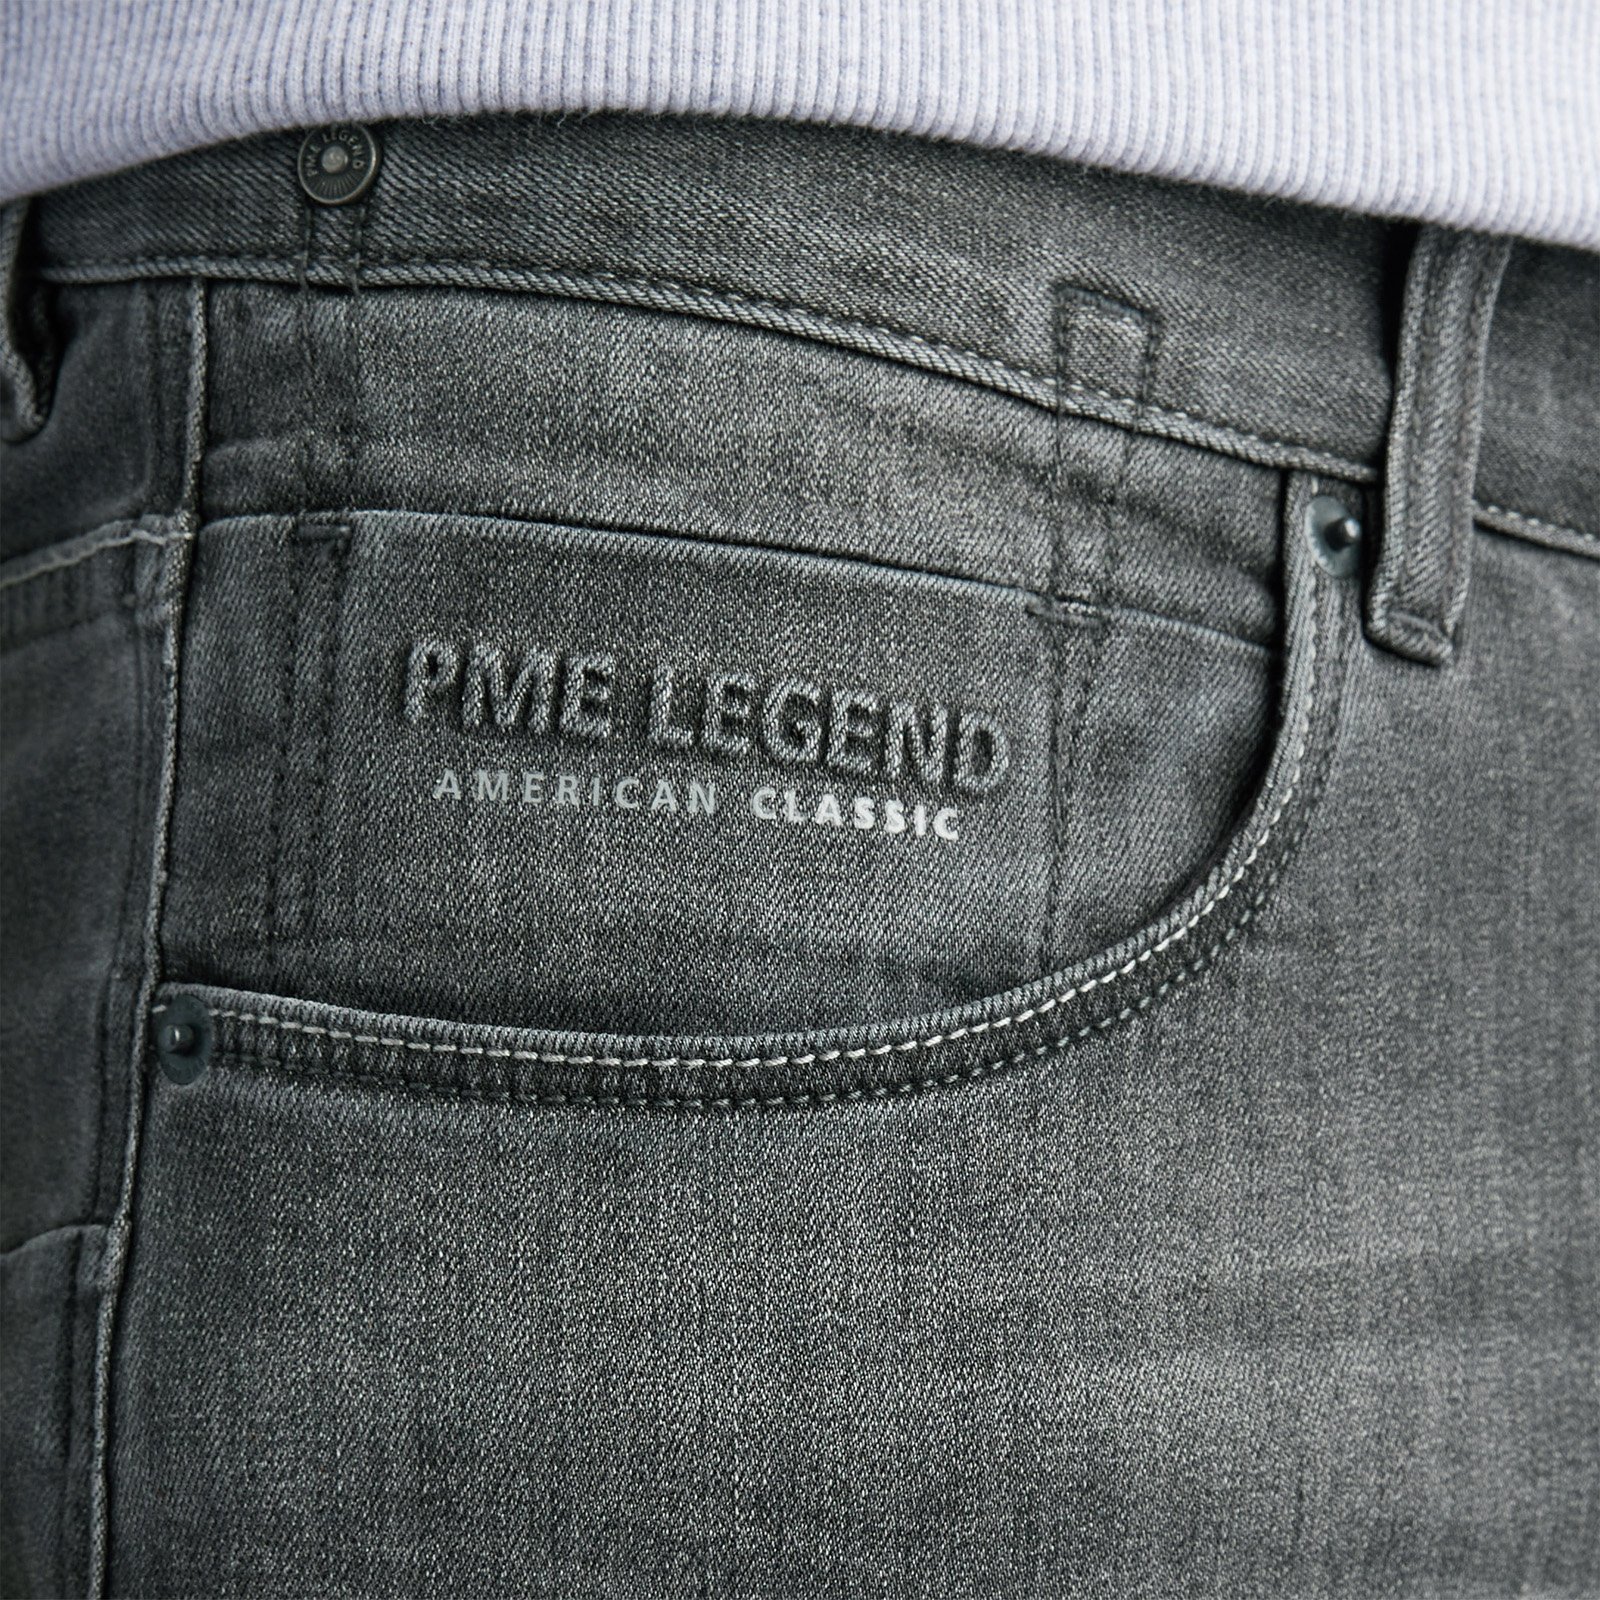 Latijns Wiskundig Tomaat PME LEGEND | PME Legend Nightflight jeans | Gratis verzending en retourneren